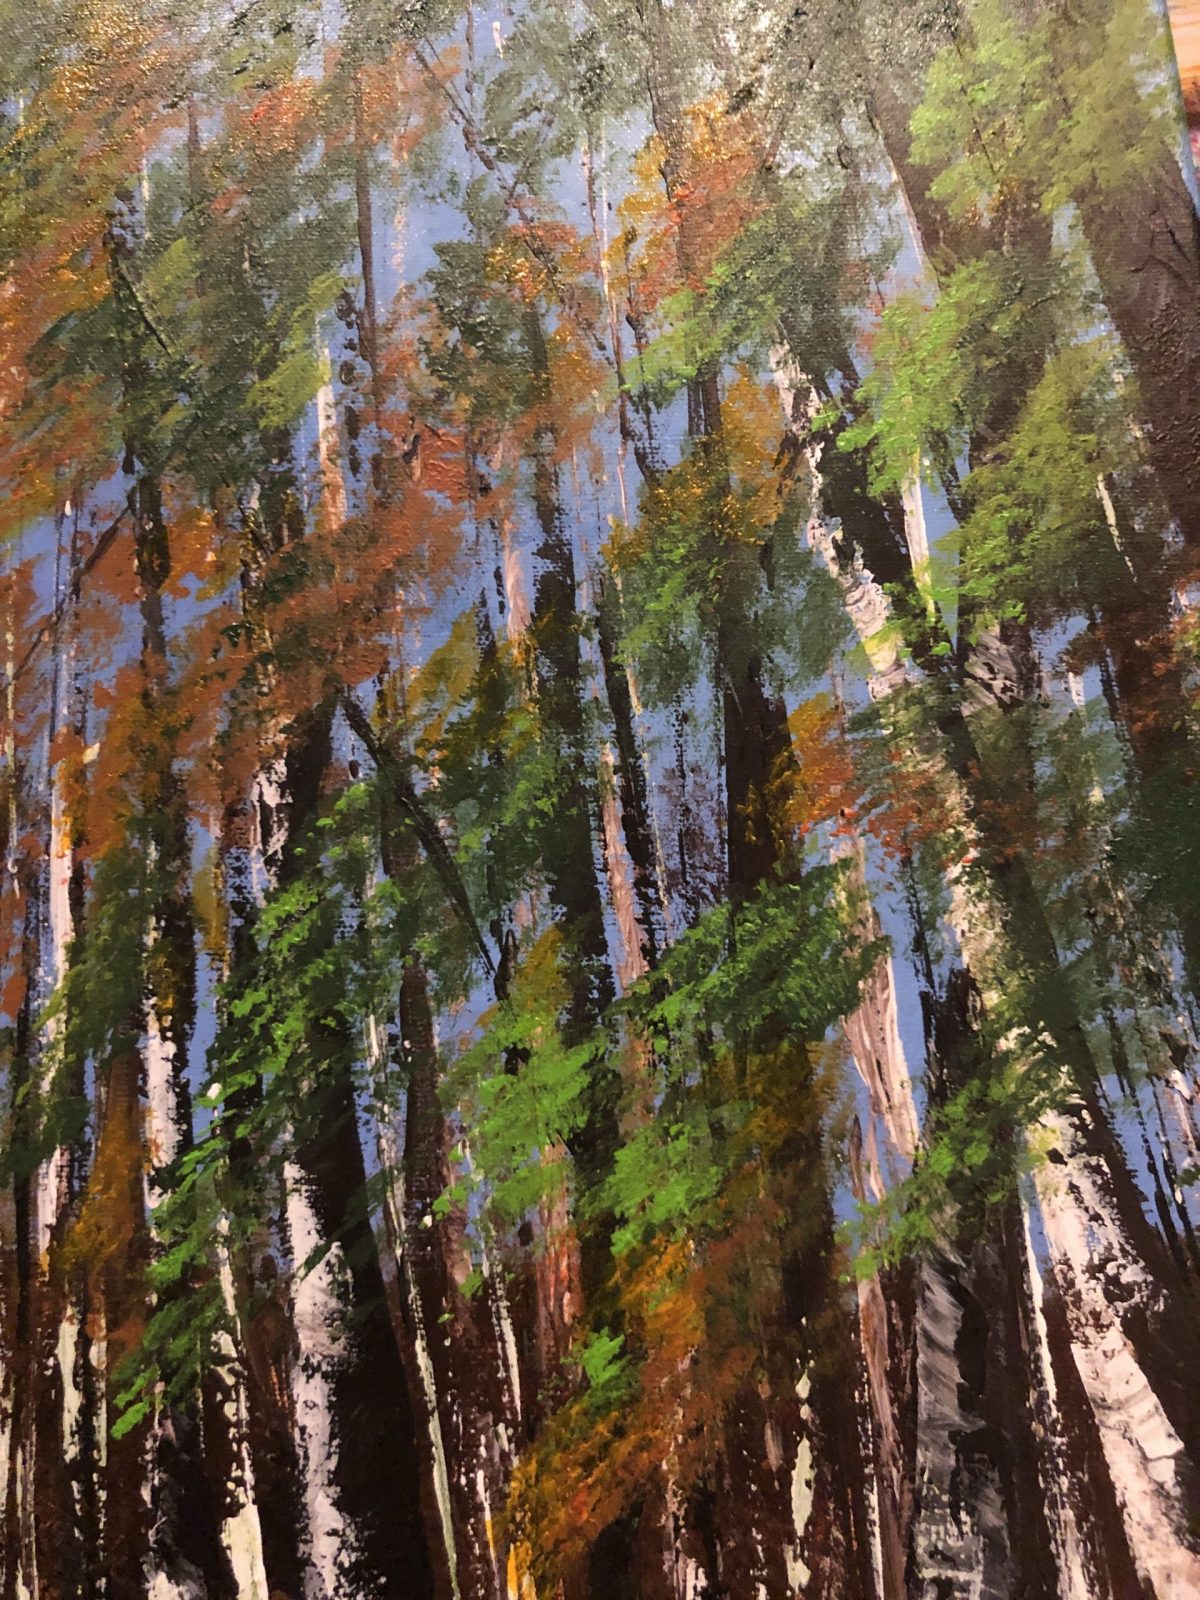 "Forêt Domaniale de Sault à l'automne", feuillages